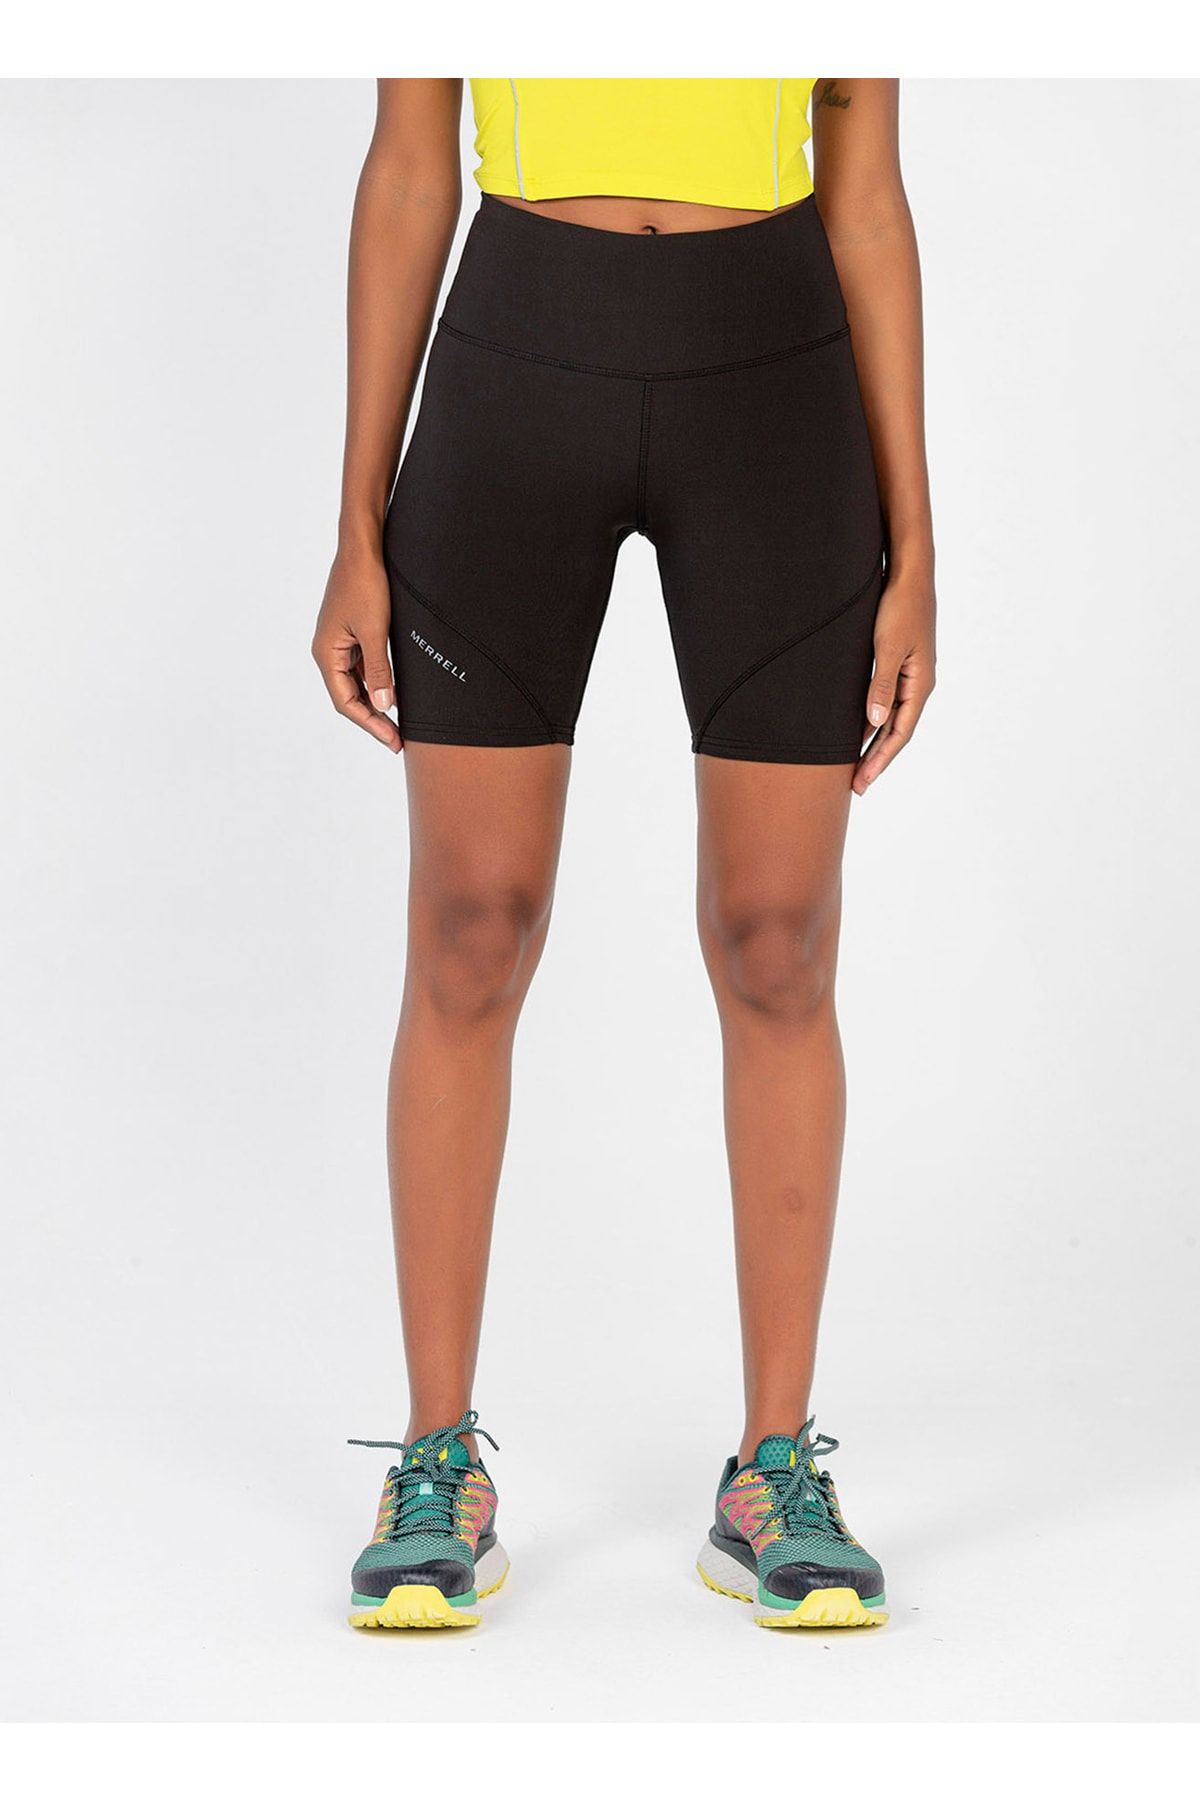 Nike Yoga Luxe Infinalon 7-8 Siyah Kadın Tayt -cj3801-010 Fiyatı, Yorumları  - Trendyol